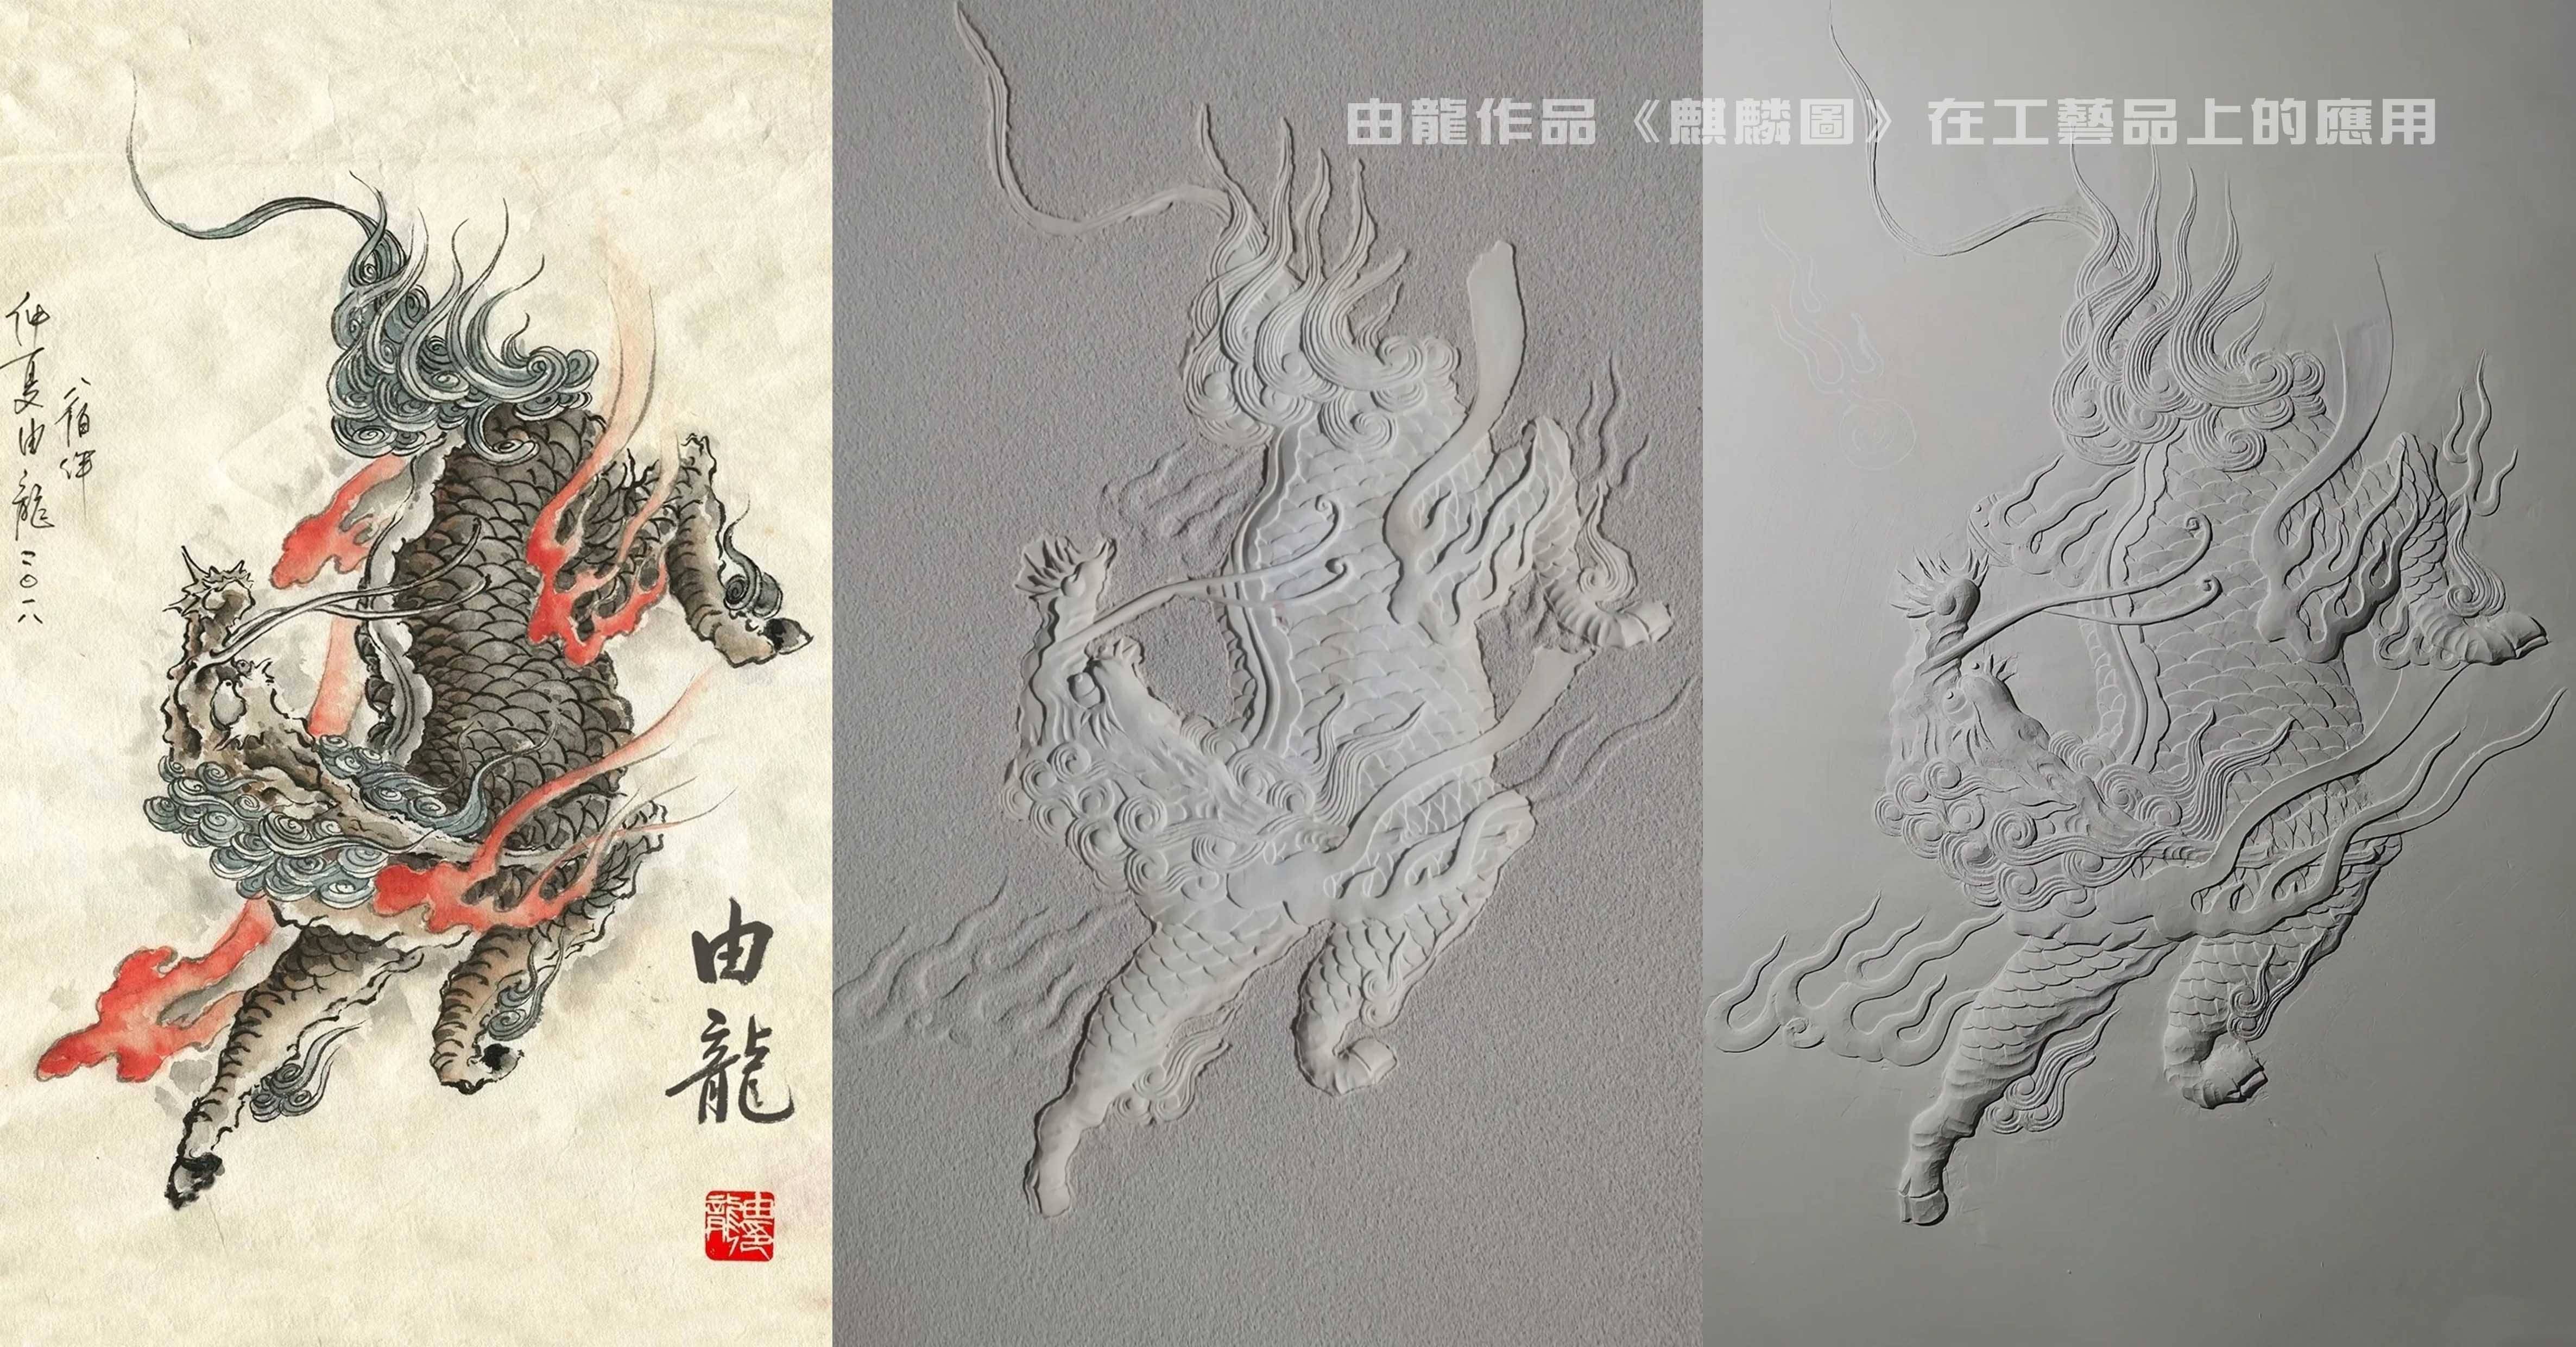 由龙：中华民族龙纹研究与工艺艺术品应用-互联汽车网